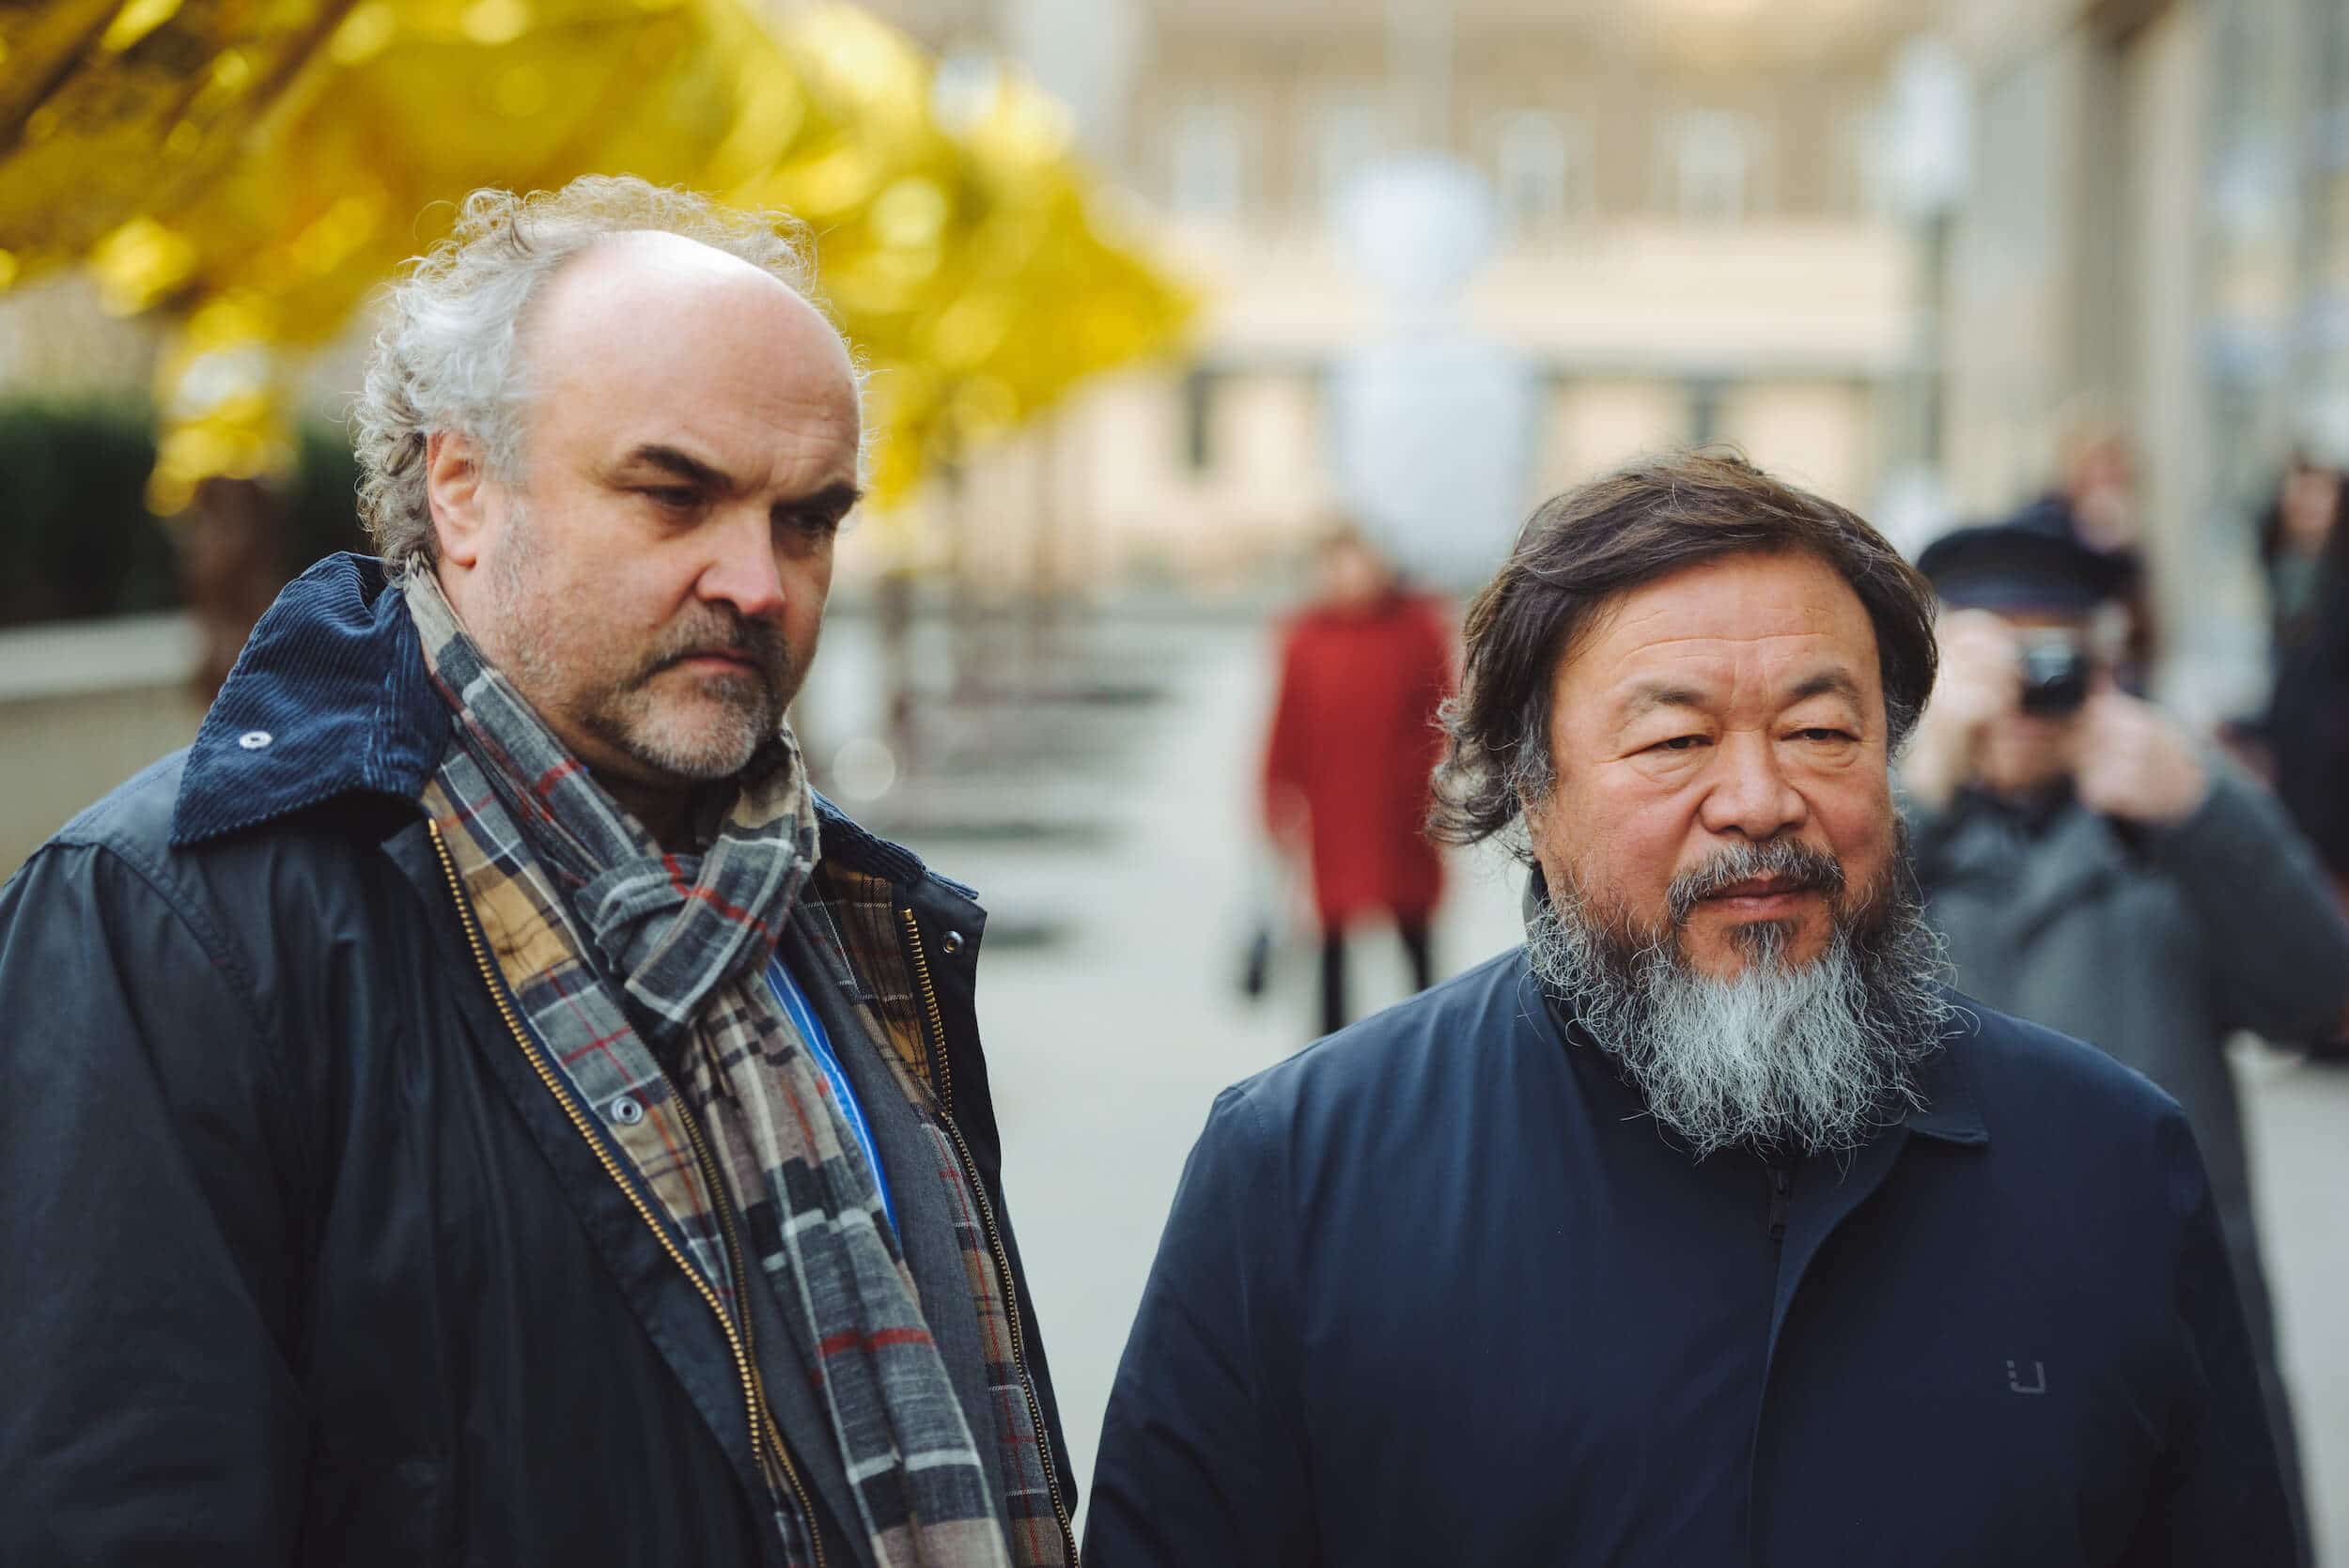 Eröffnung der Ausstellung Ai Weiwei Zodiac Heads, Pressefoto © Jan Hromádko; NGP